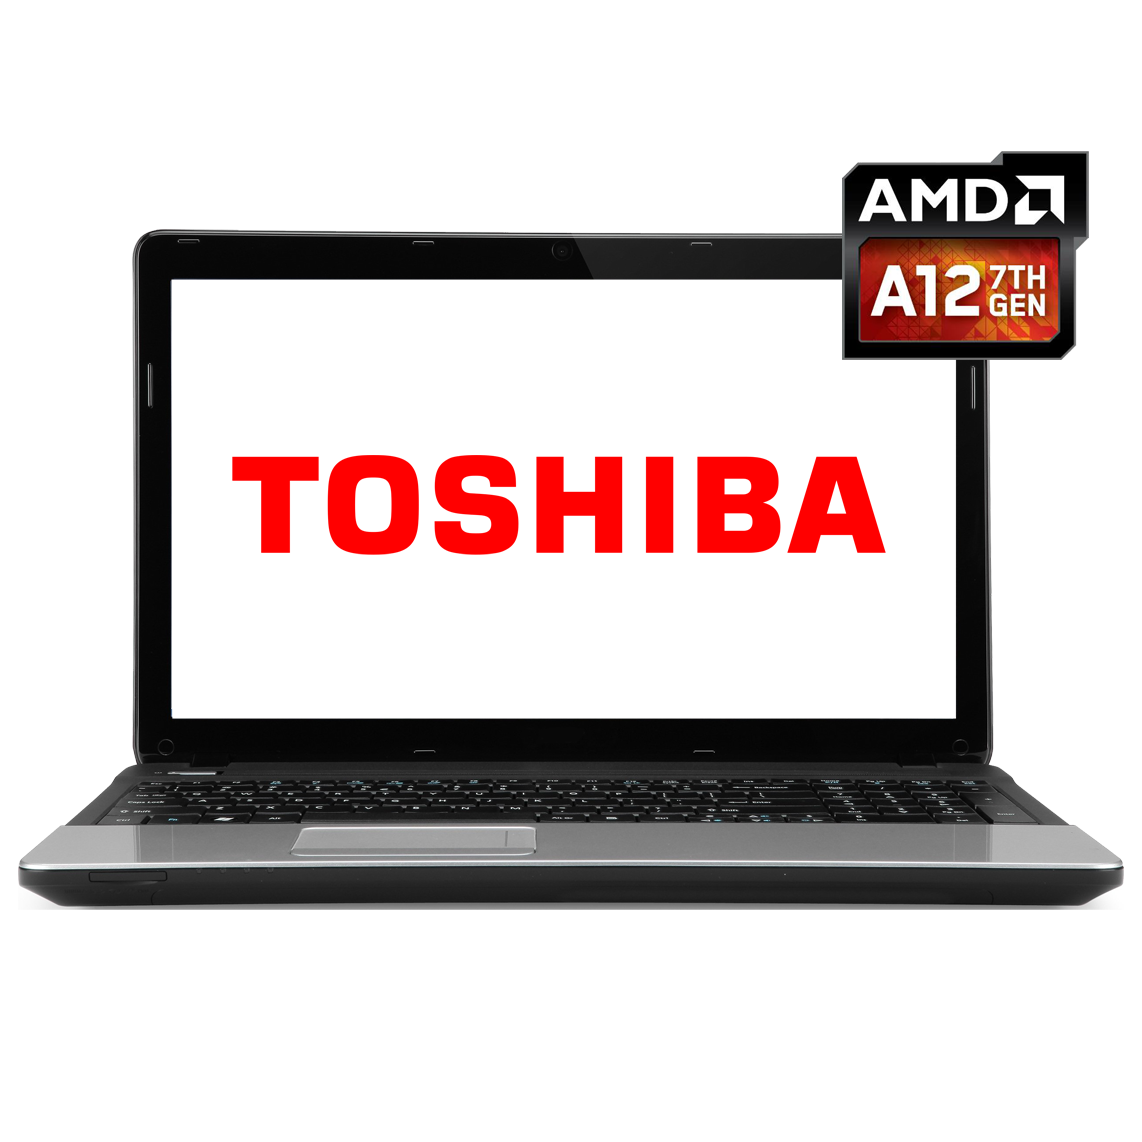 Toshiba - 13 inch AMD A12